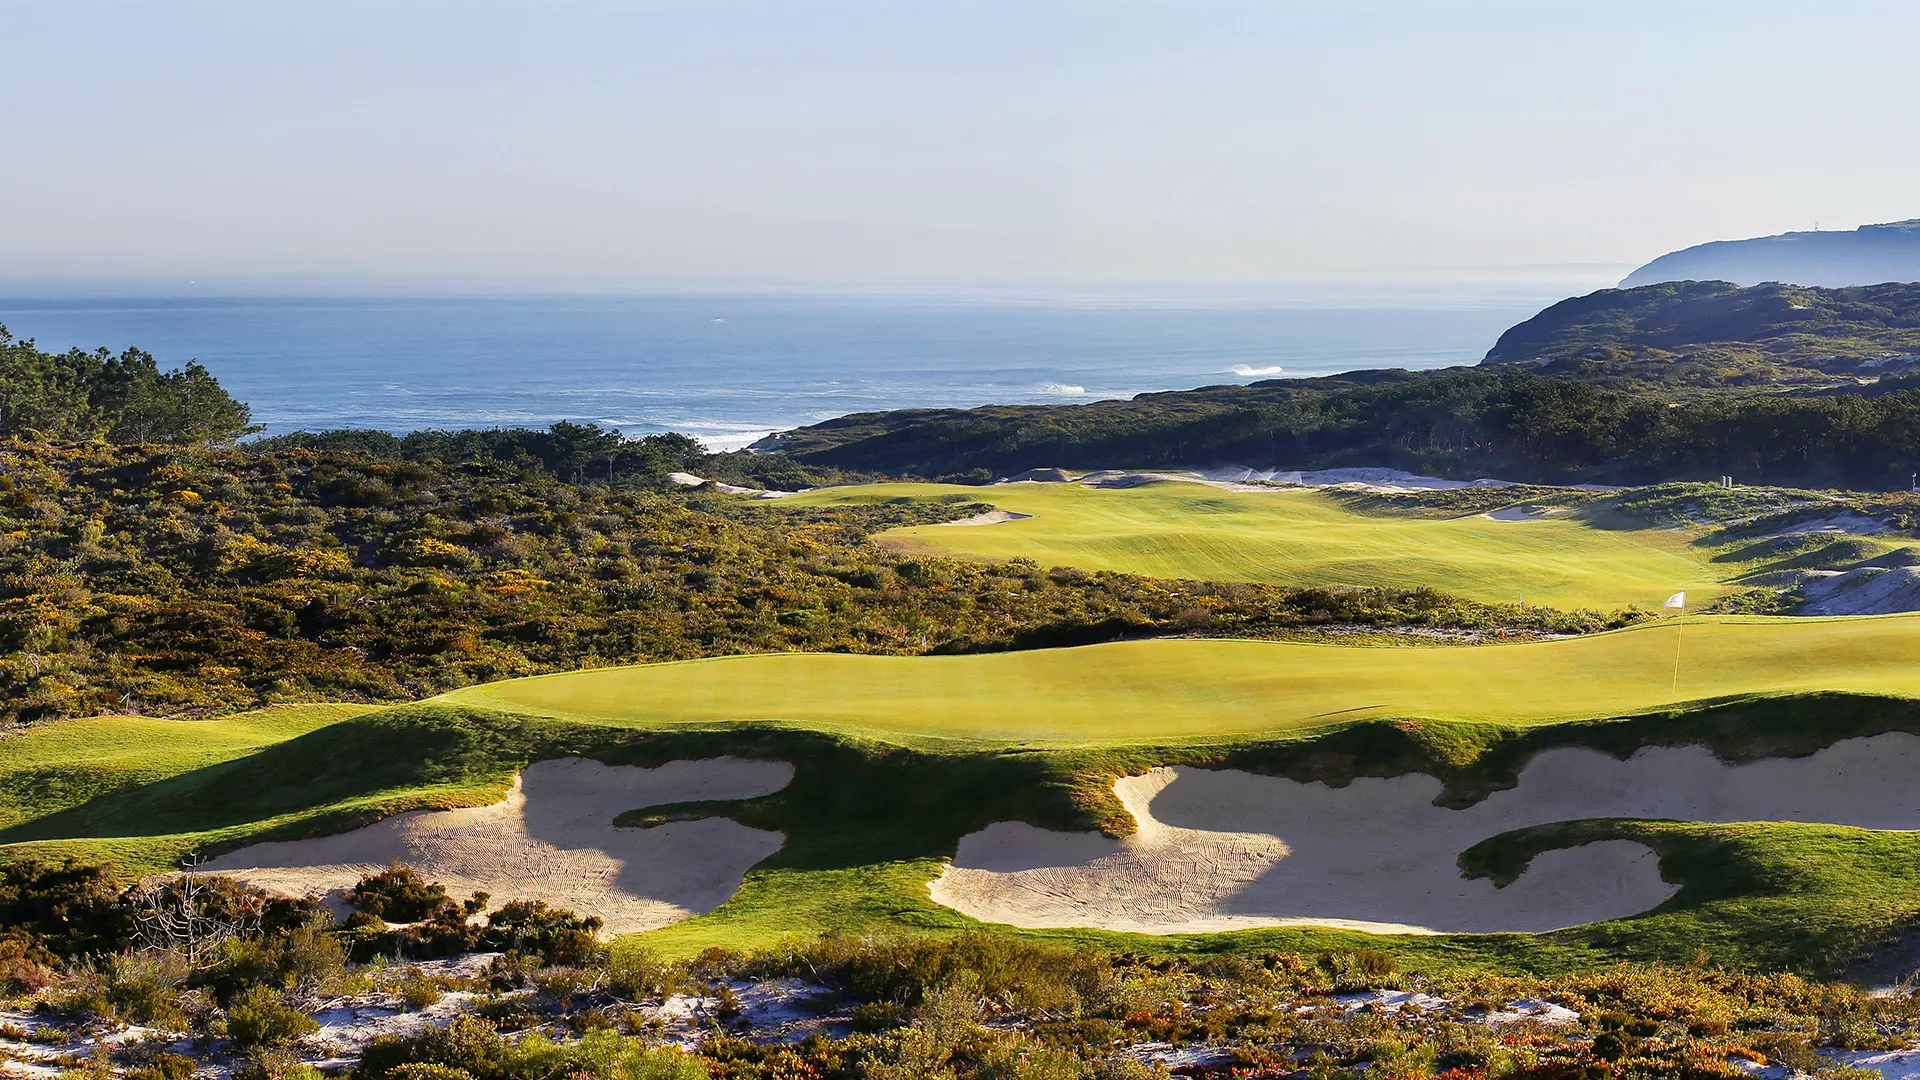 Portugal golf holidays - Club de Golf Quinta da Marinha in Cascais Lisbon - Photo 1